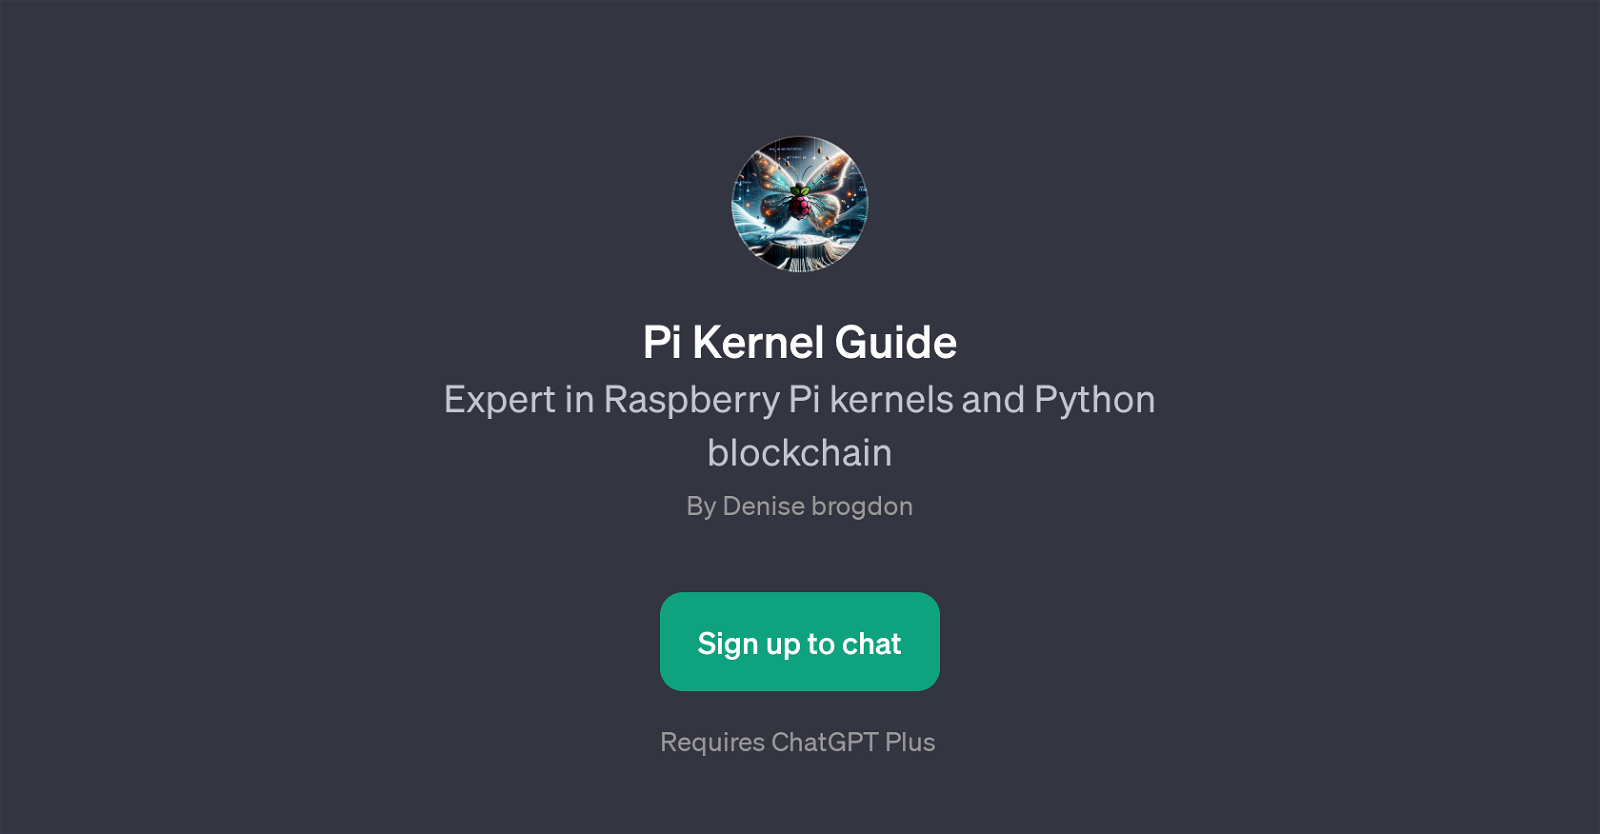 Pi Kernel Guide website